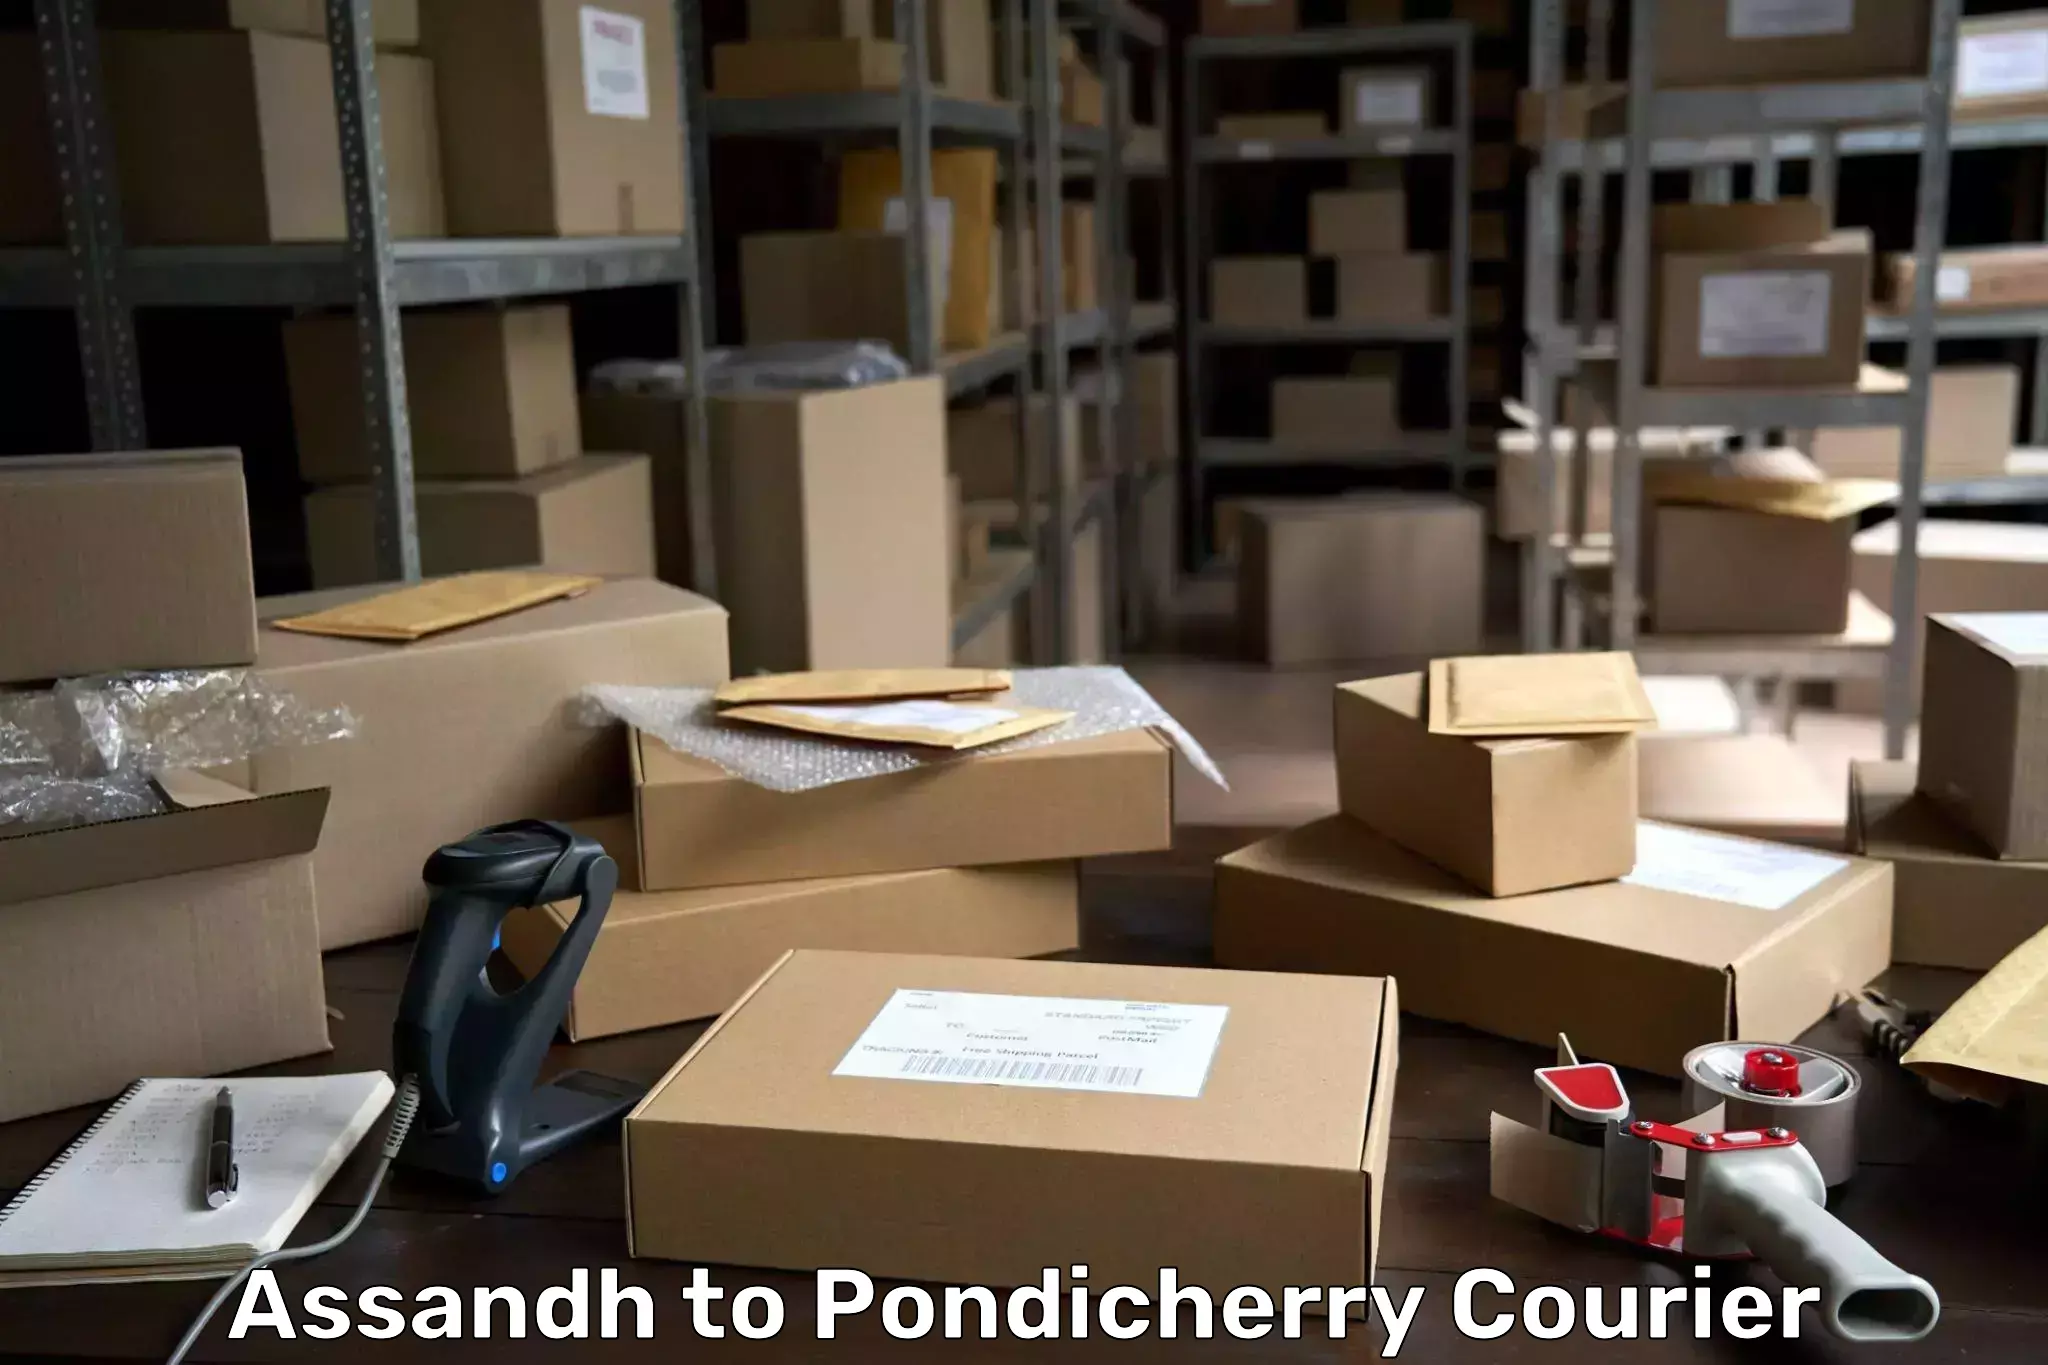 Quick dispatch service Assandh to Pondicherry